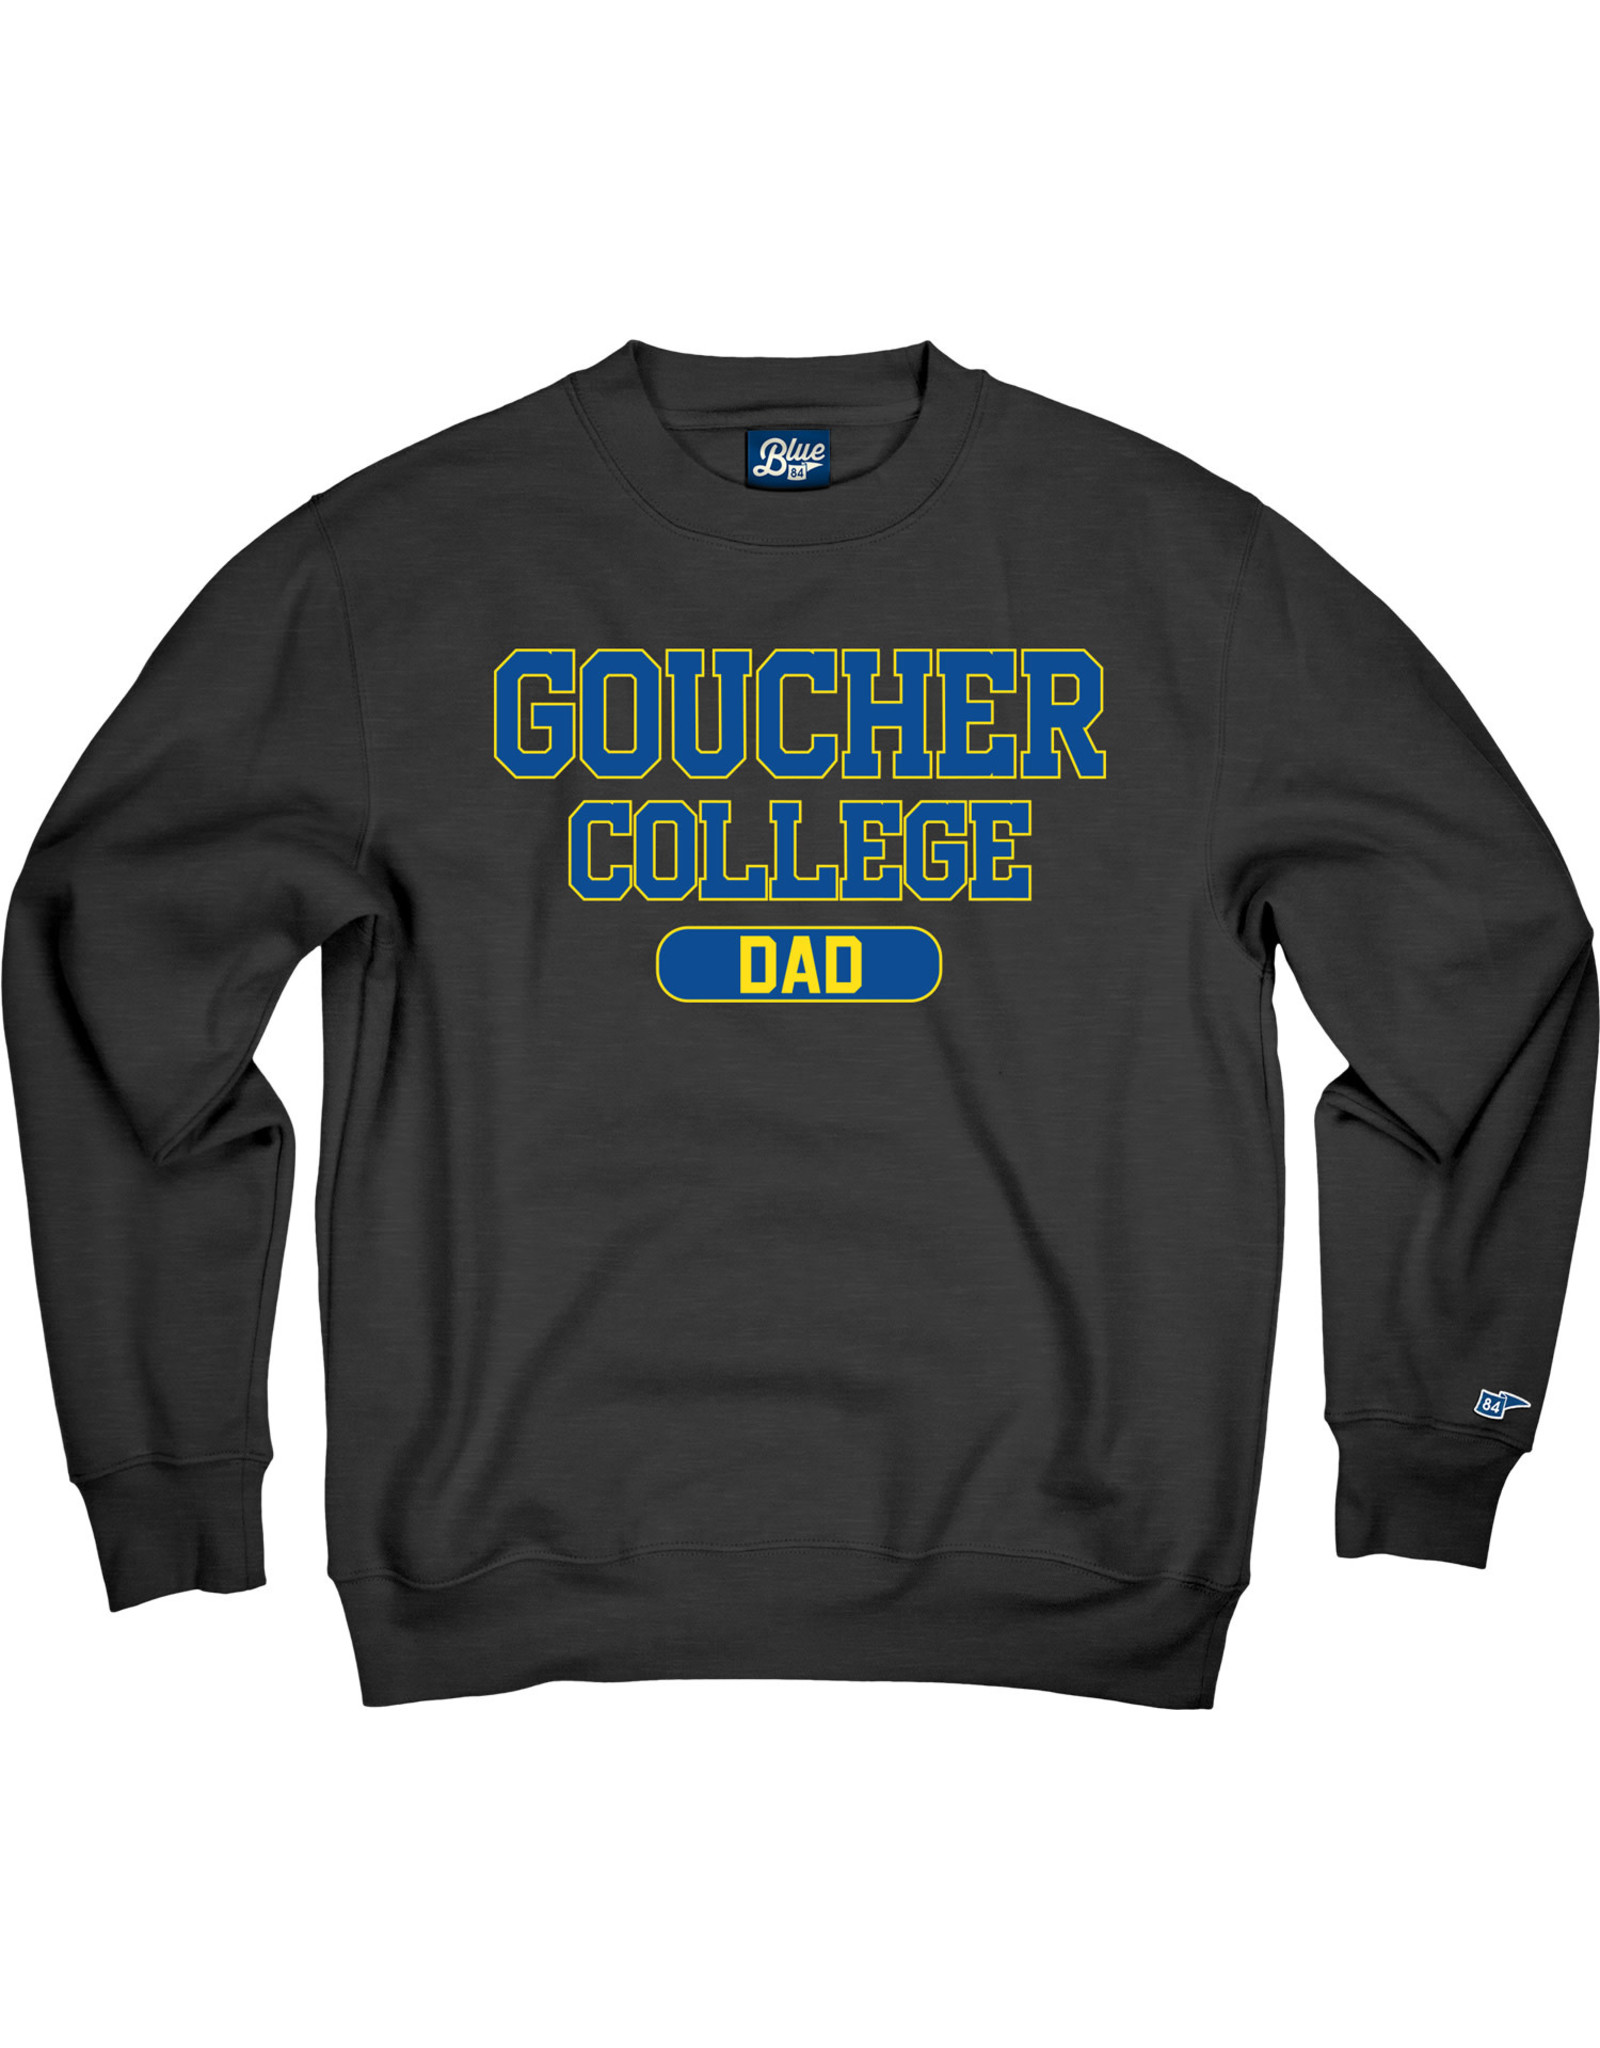 Blue84 "Goucher College Dad" Crewneck Sweatshirt